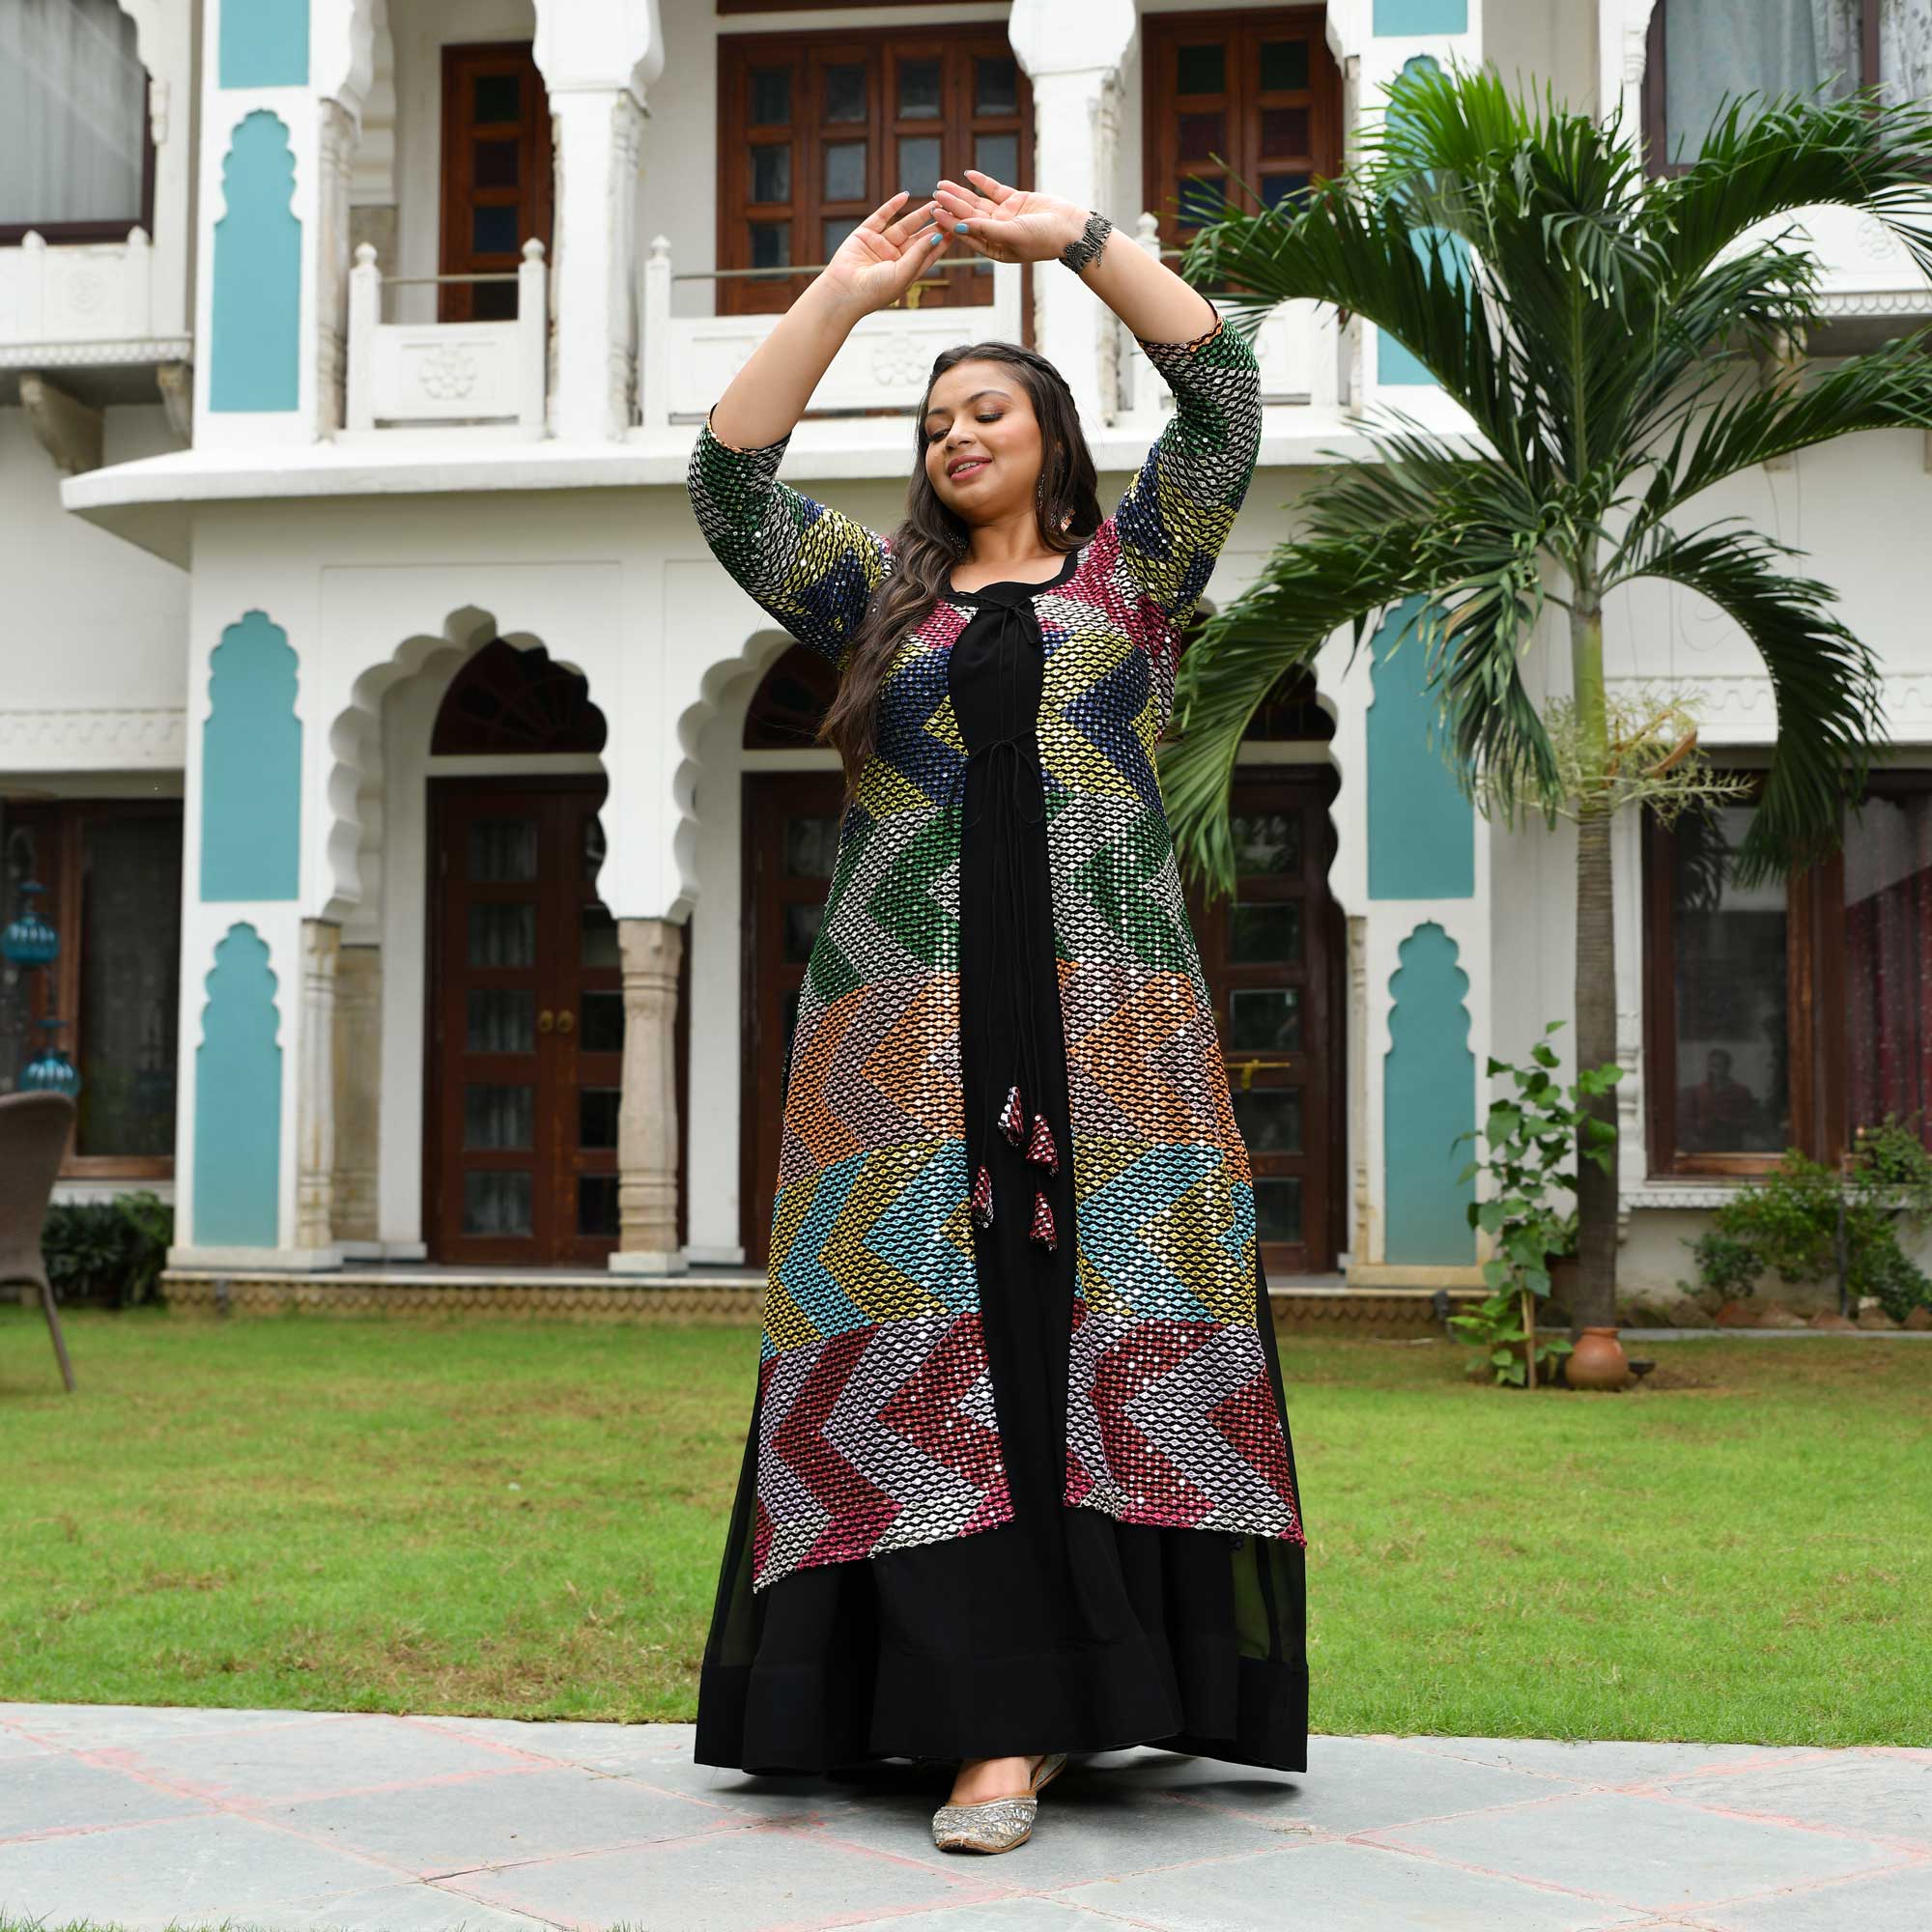 ऐश्वर्या शर्मा का समर कलेक्शन बाकी सेलेब्स से हैं जरा हटके, यहां देखें  बेस्ट ड्रेसेस